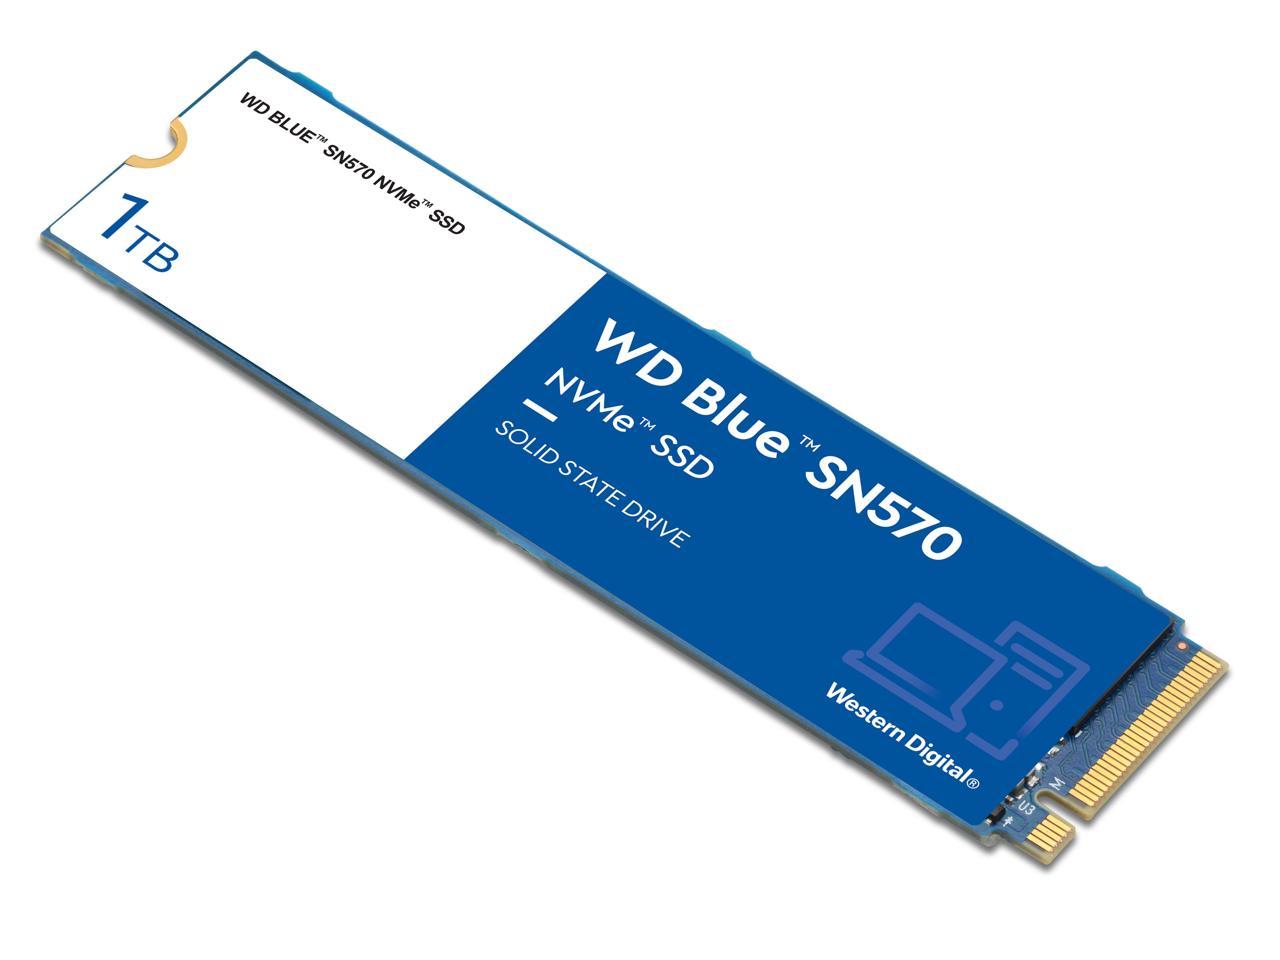 1TB WD Blue SN570 NVMe SSD $80